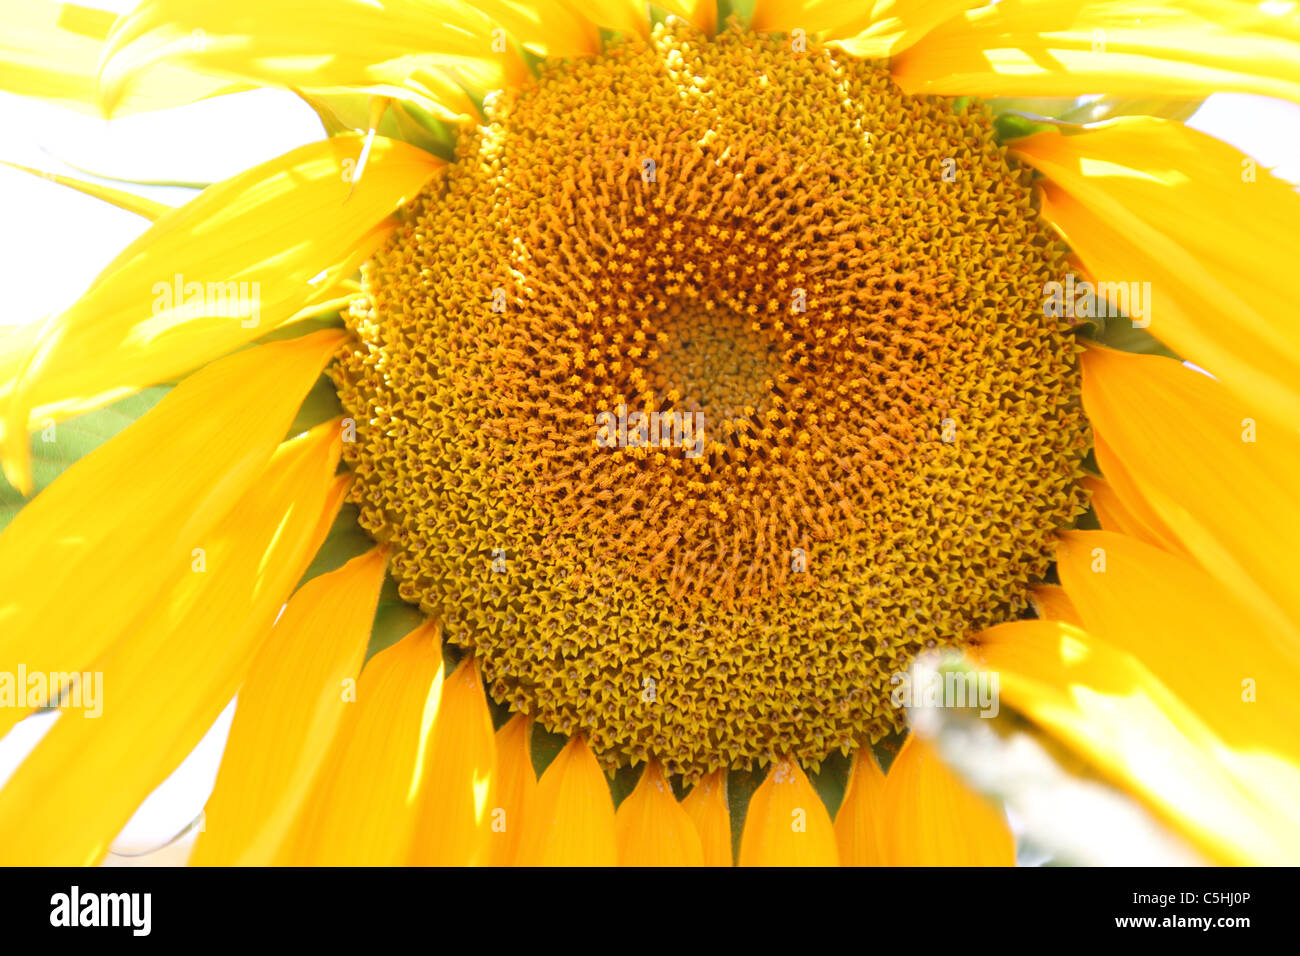 La Turquie, l'Anatolie Centrale, tournesol, tournesol, graines de fleurs jaune soleil Banque D'Images